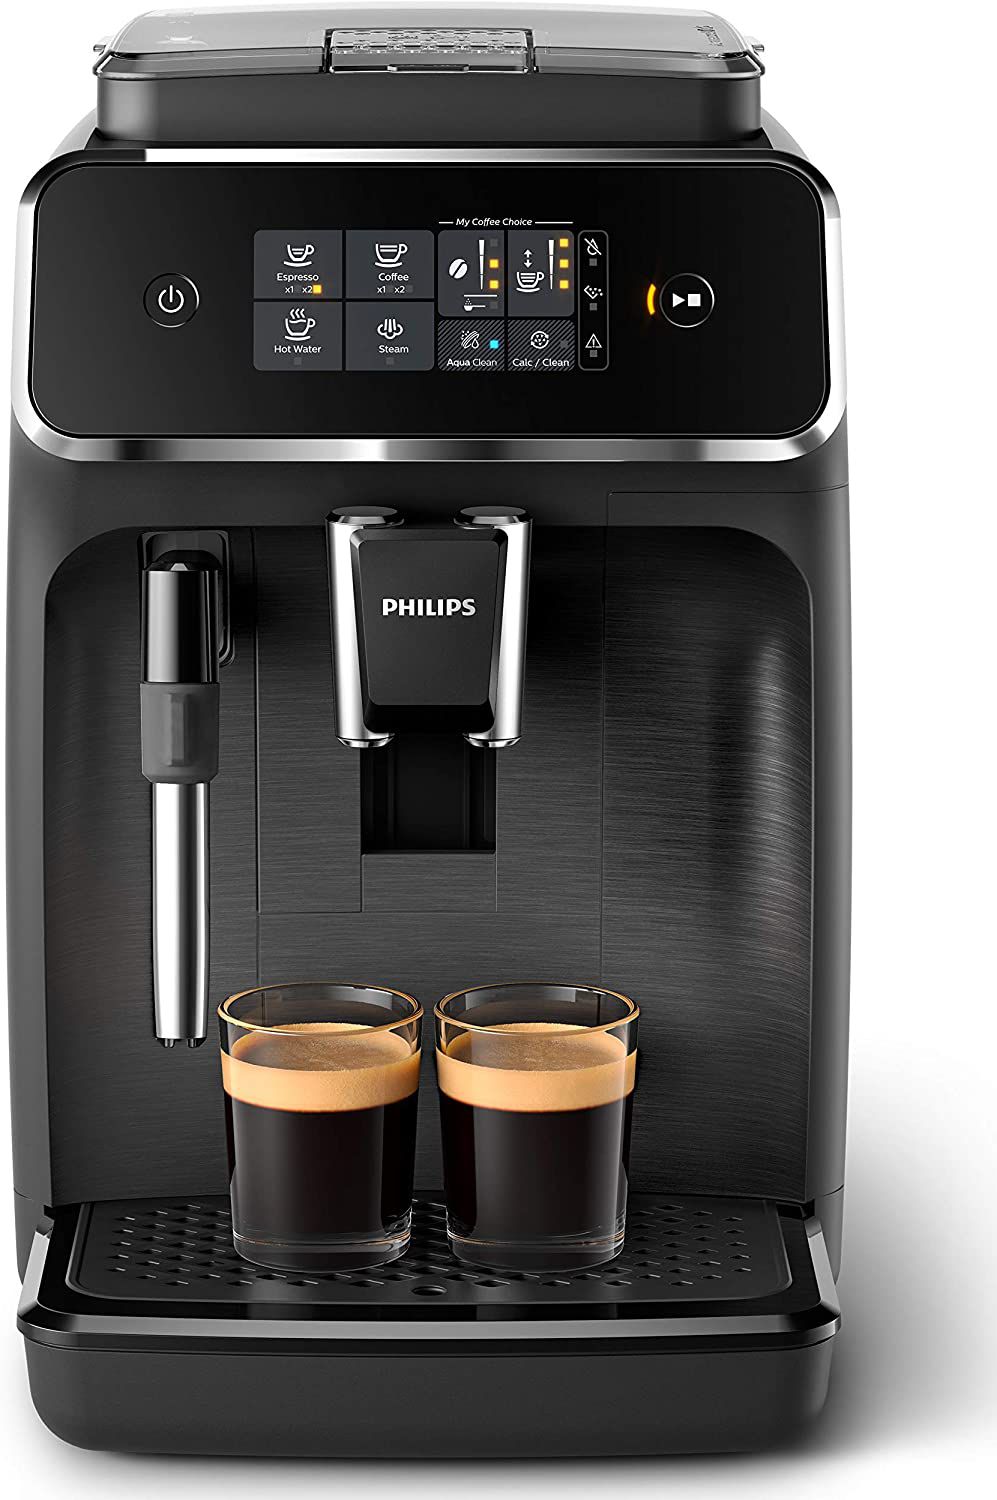 Philips 2200 Serie EP2220/10 Kaffeevollautomat, schwarz, bei Amazon